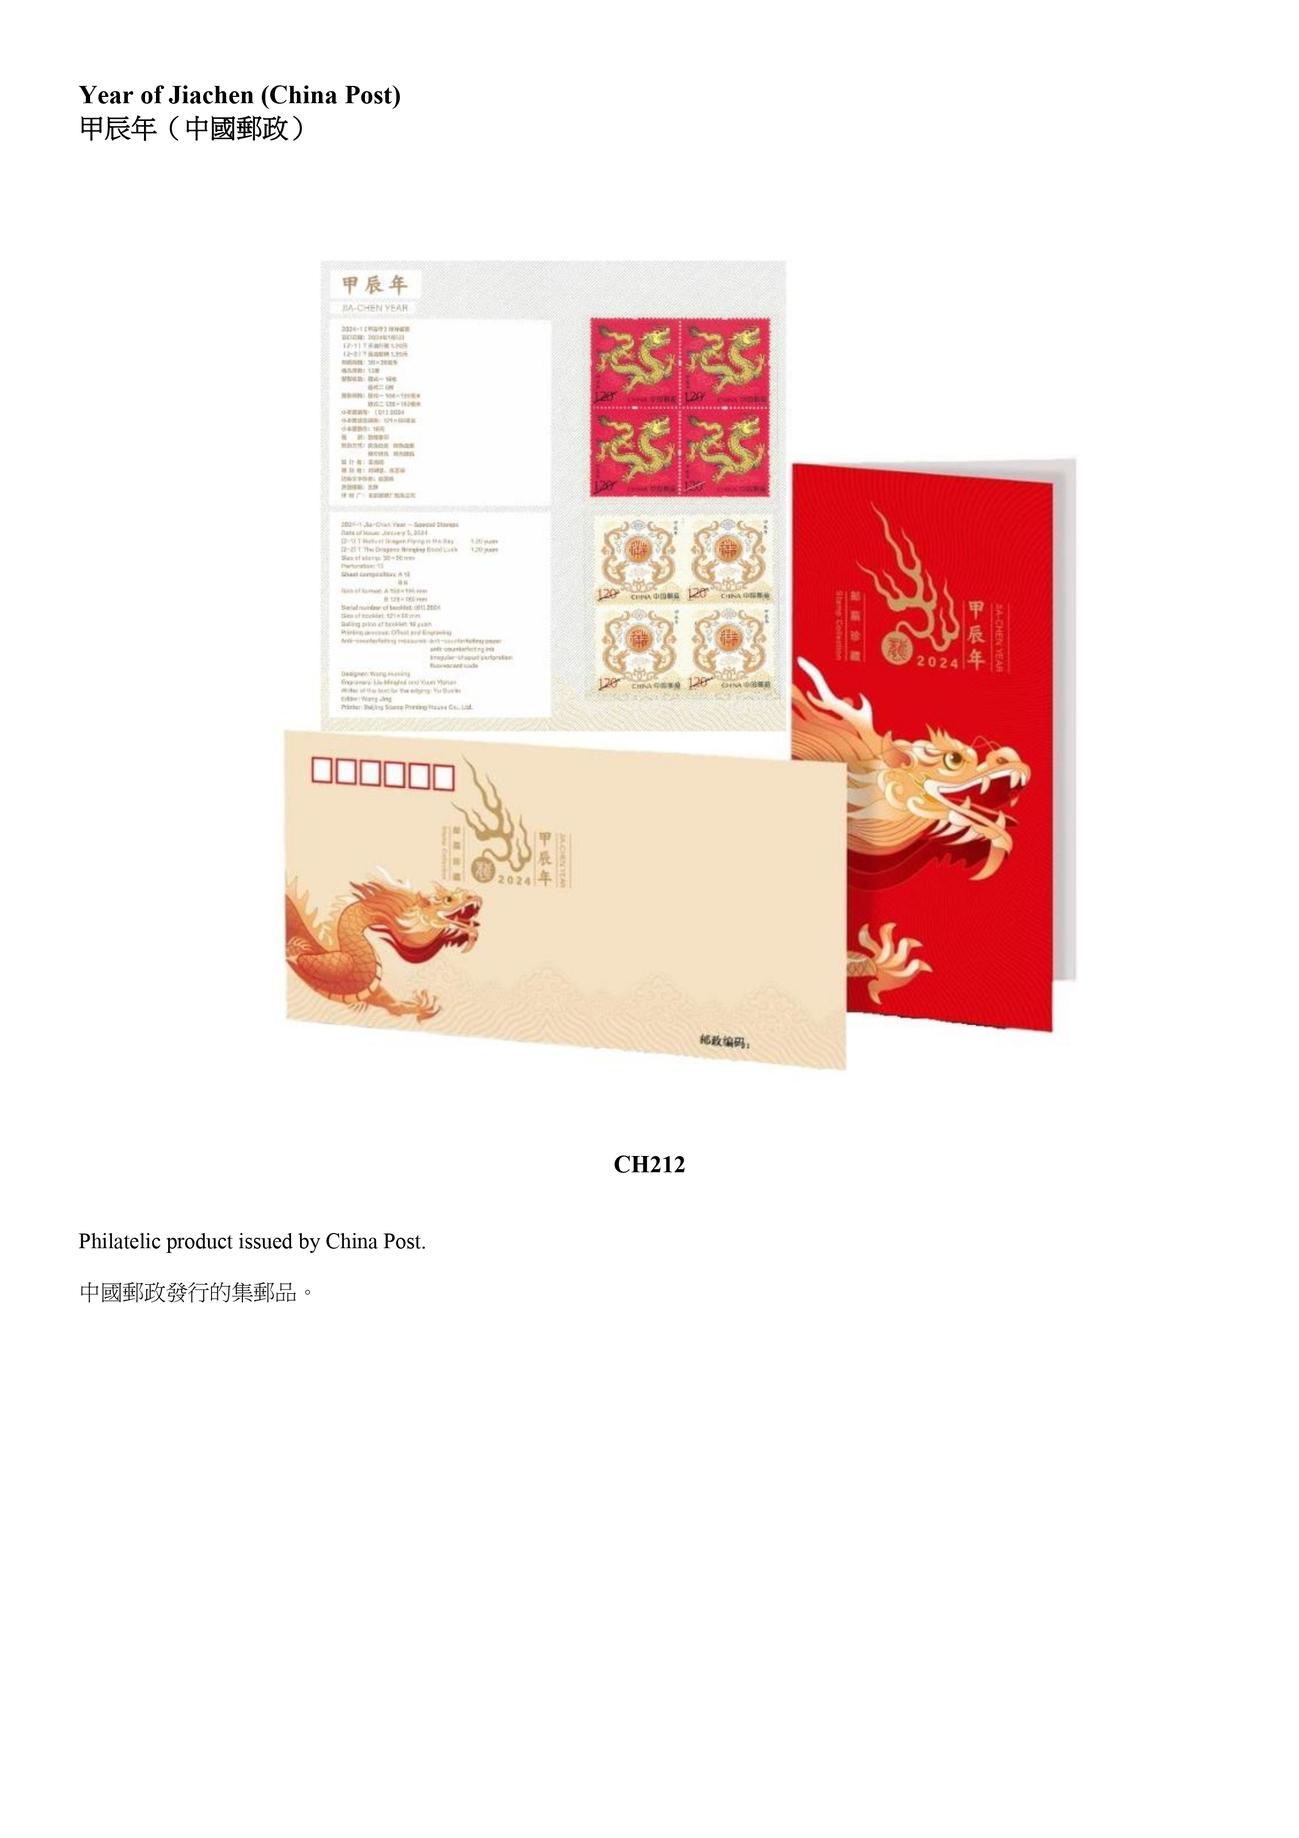 中國郵政發行的集郵品。